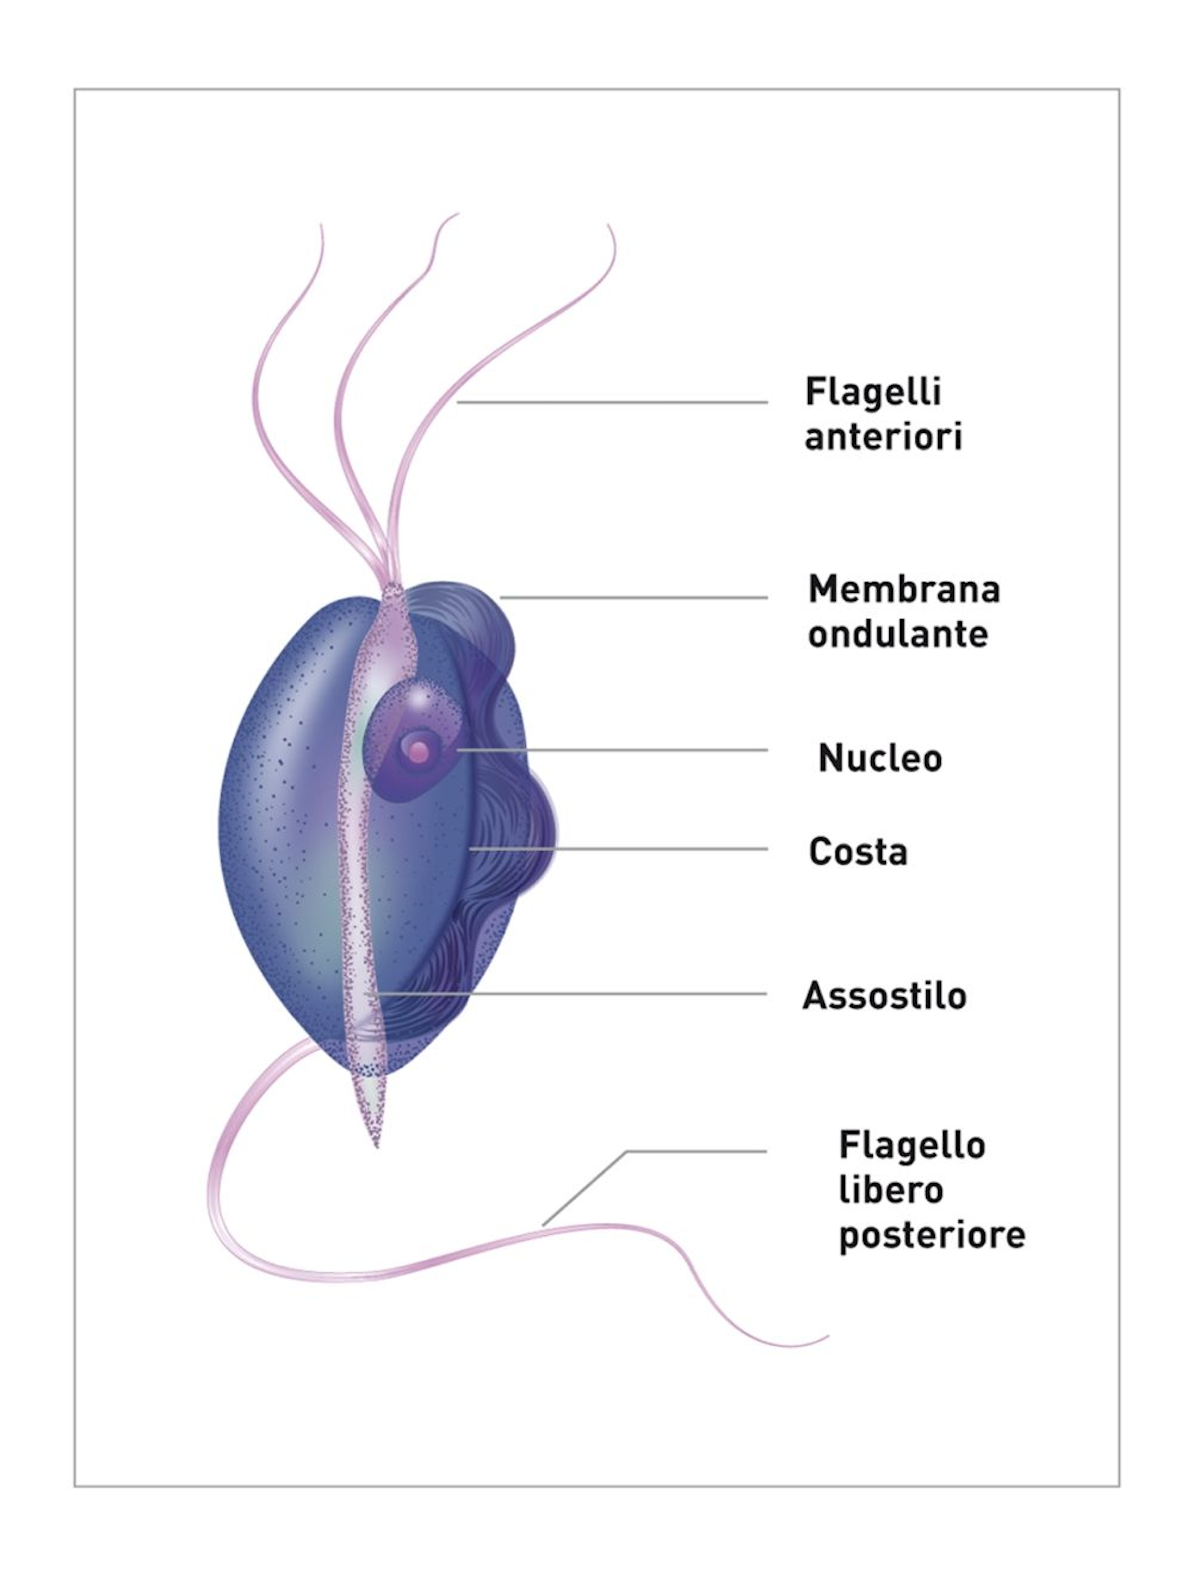 T. foetus è lungo circa 10-26 µm e largo circa 3-5 µm, e la sua forma è spesso descritta come "piriforme" o "fusiforme". Ogni microrganismo ha tre flagelli anteriori che servono per la motilità.